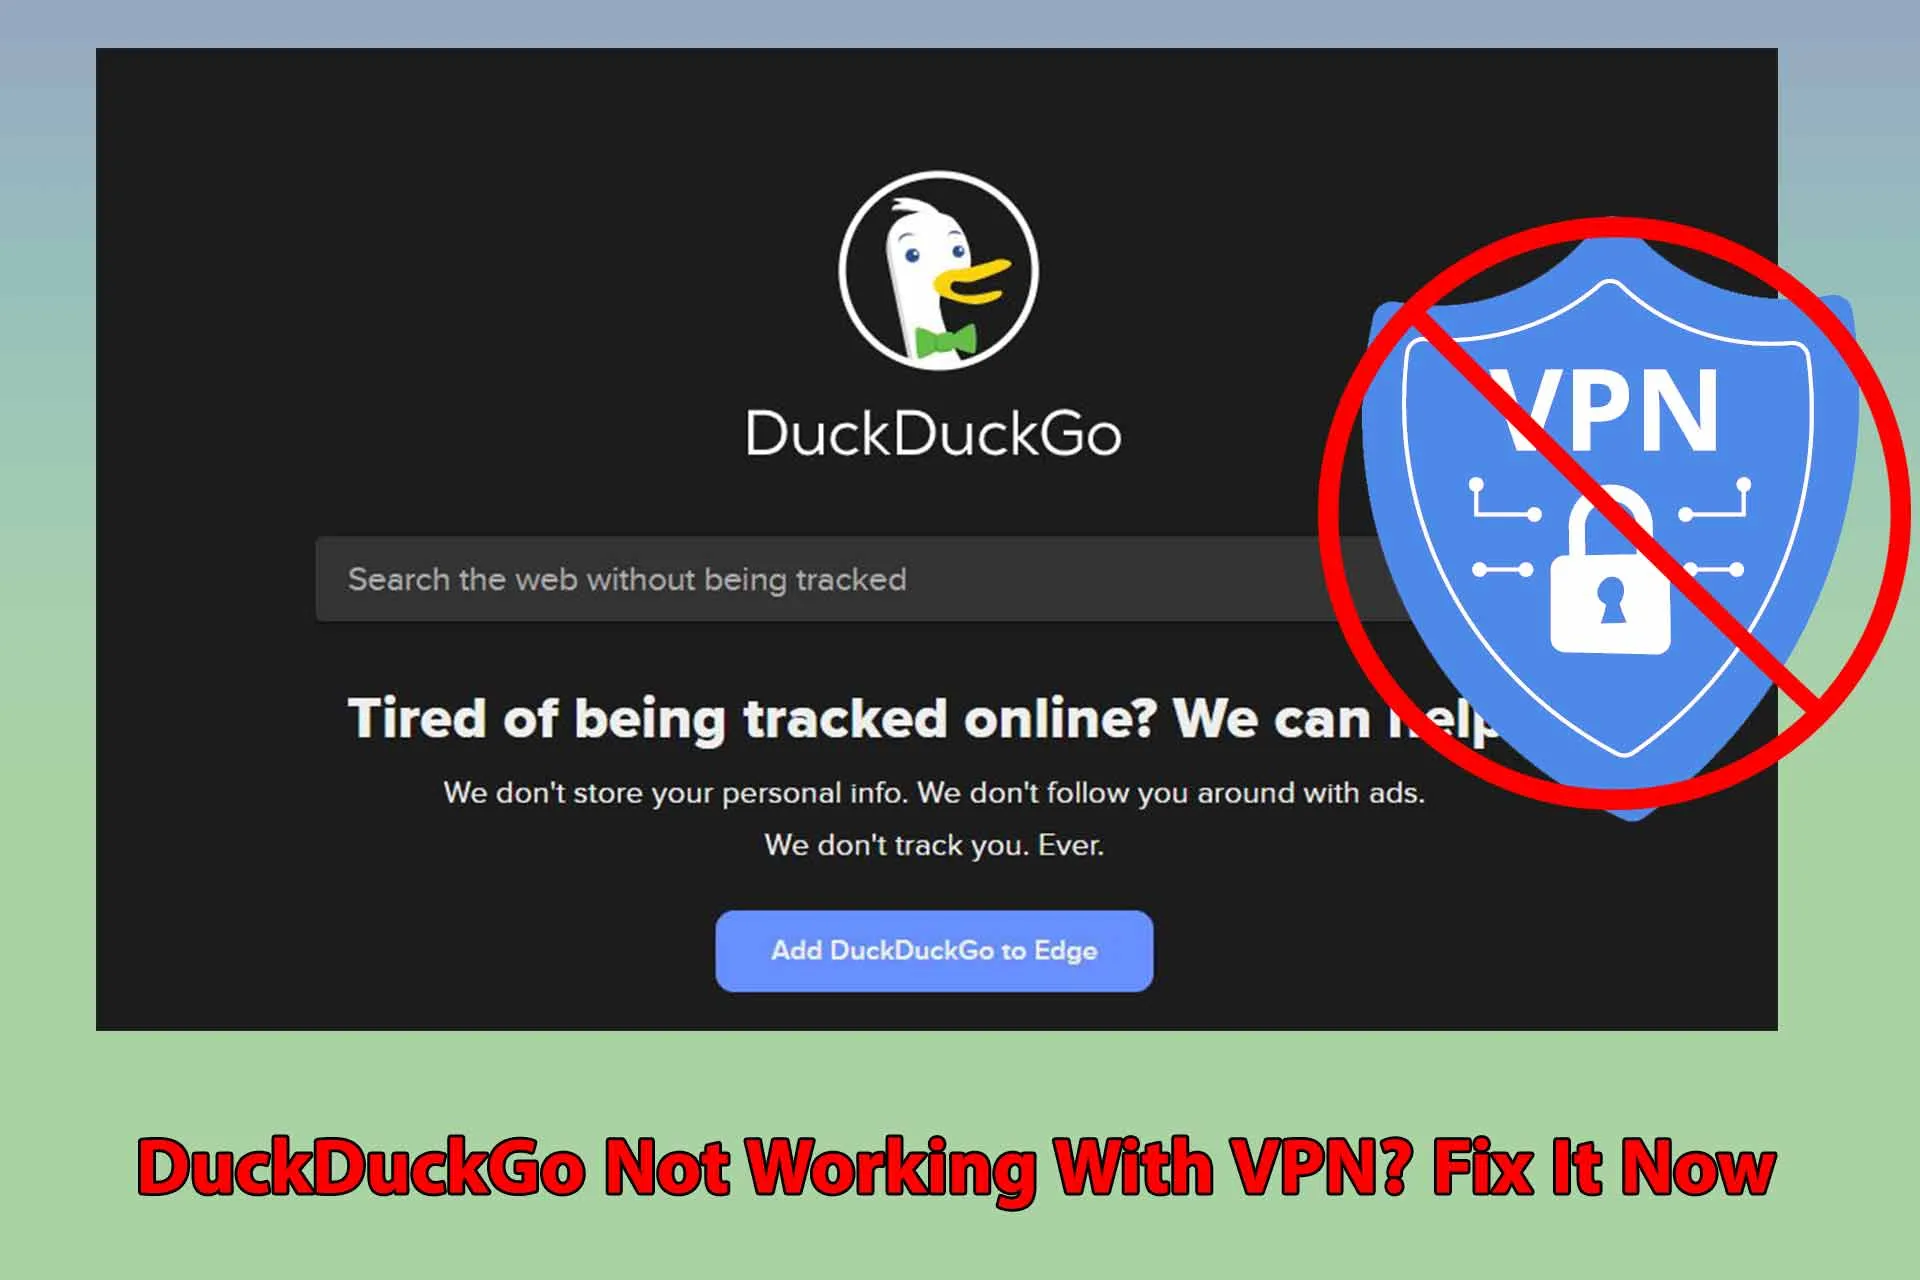 DuckDuckGo not Working with VPN